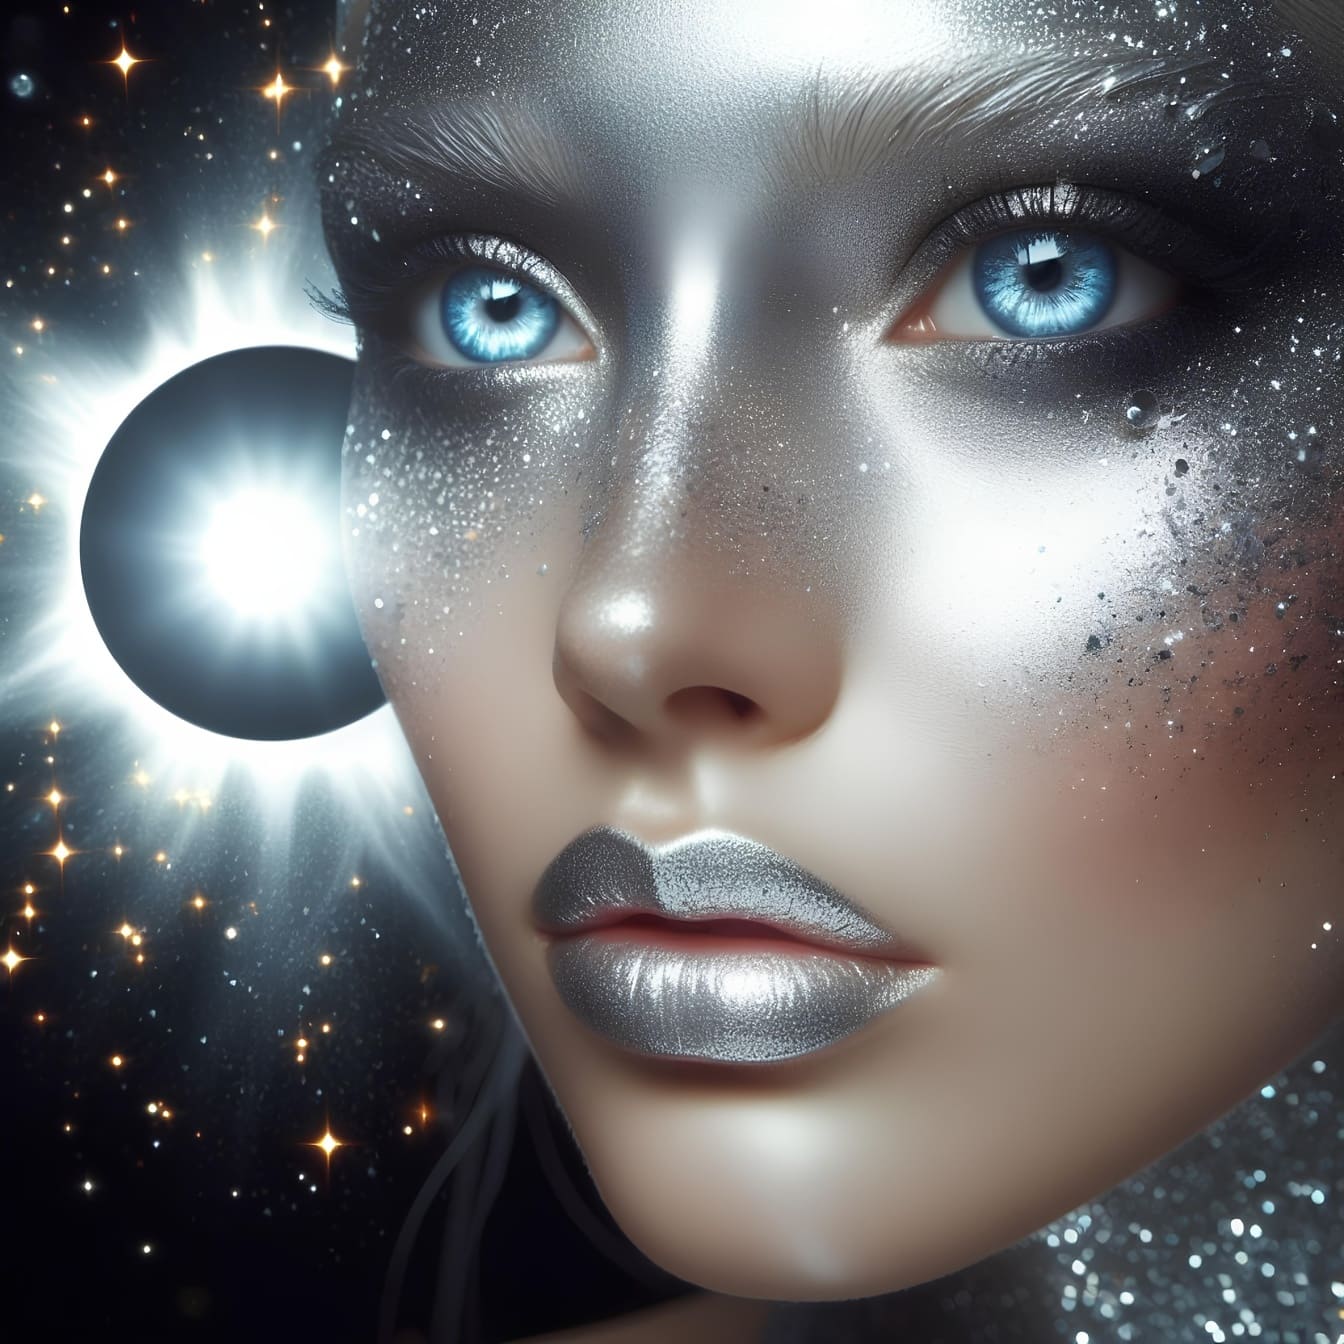 Mulher com maquiagem de glitter prateado e olhos azuis representando a divindade cósmica